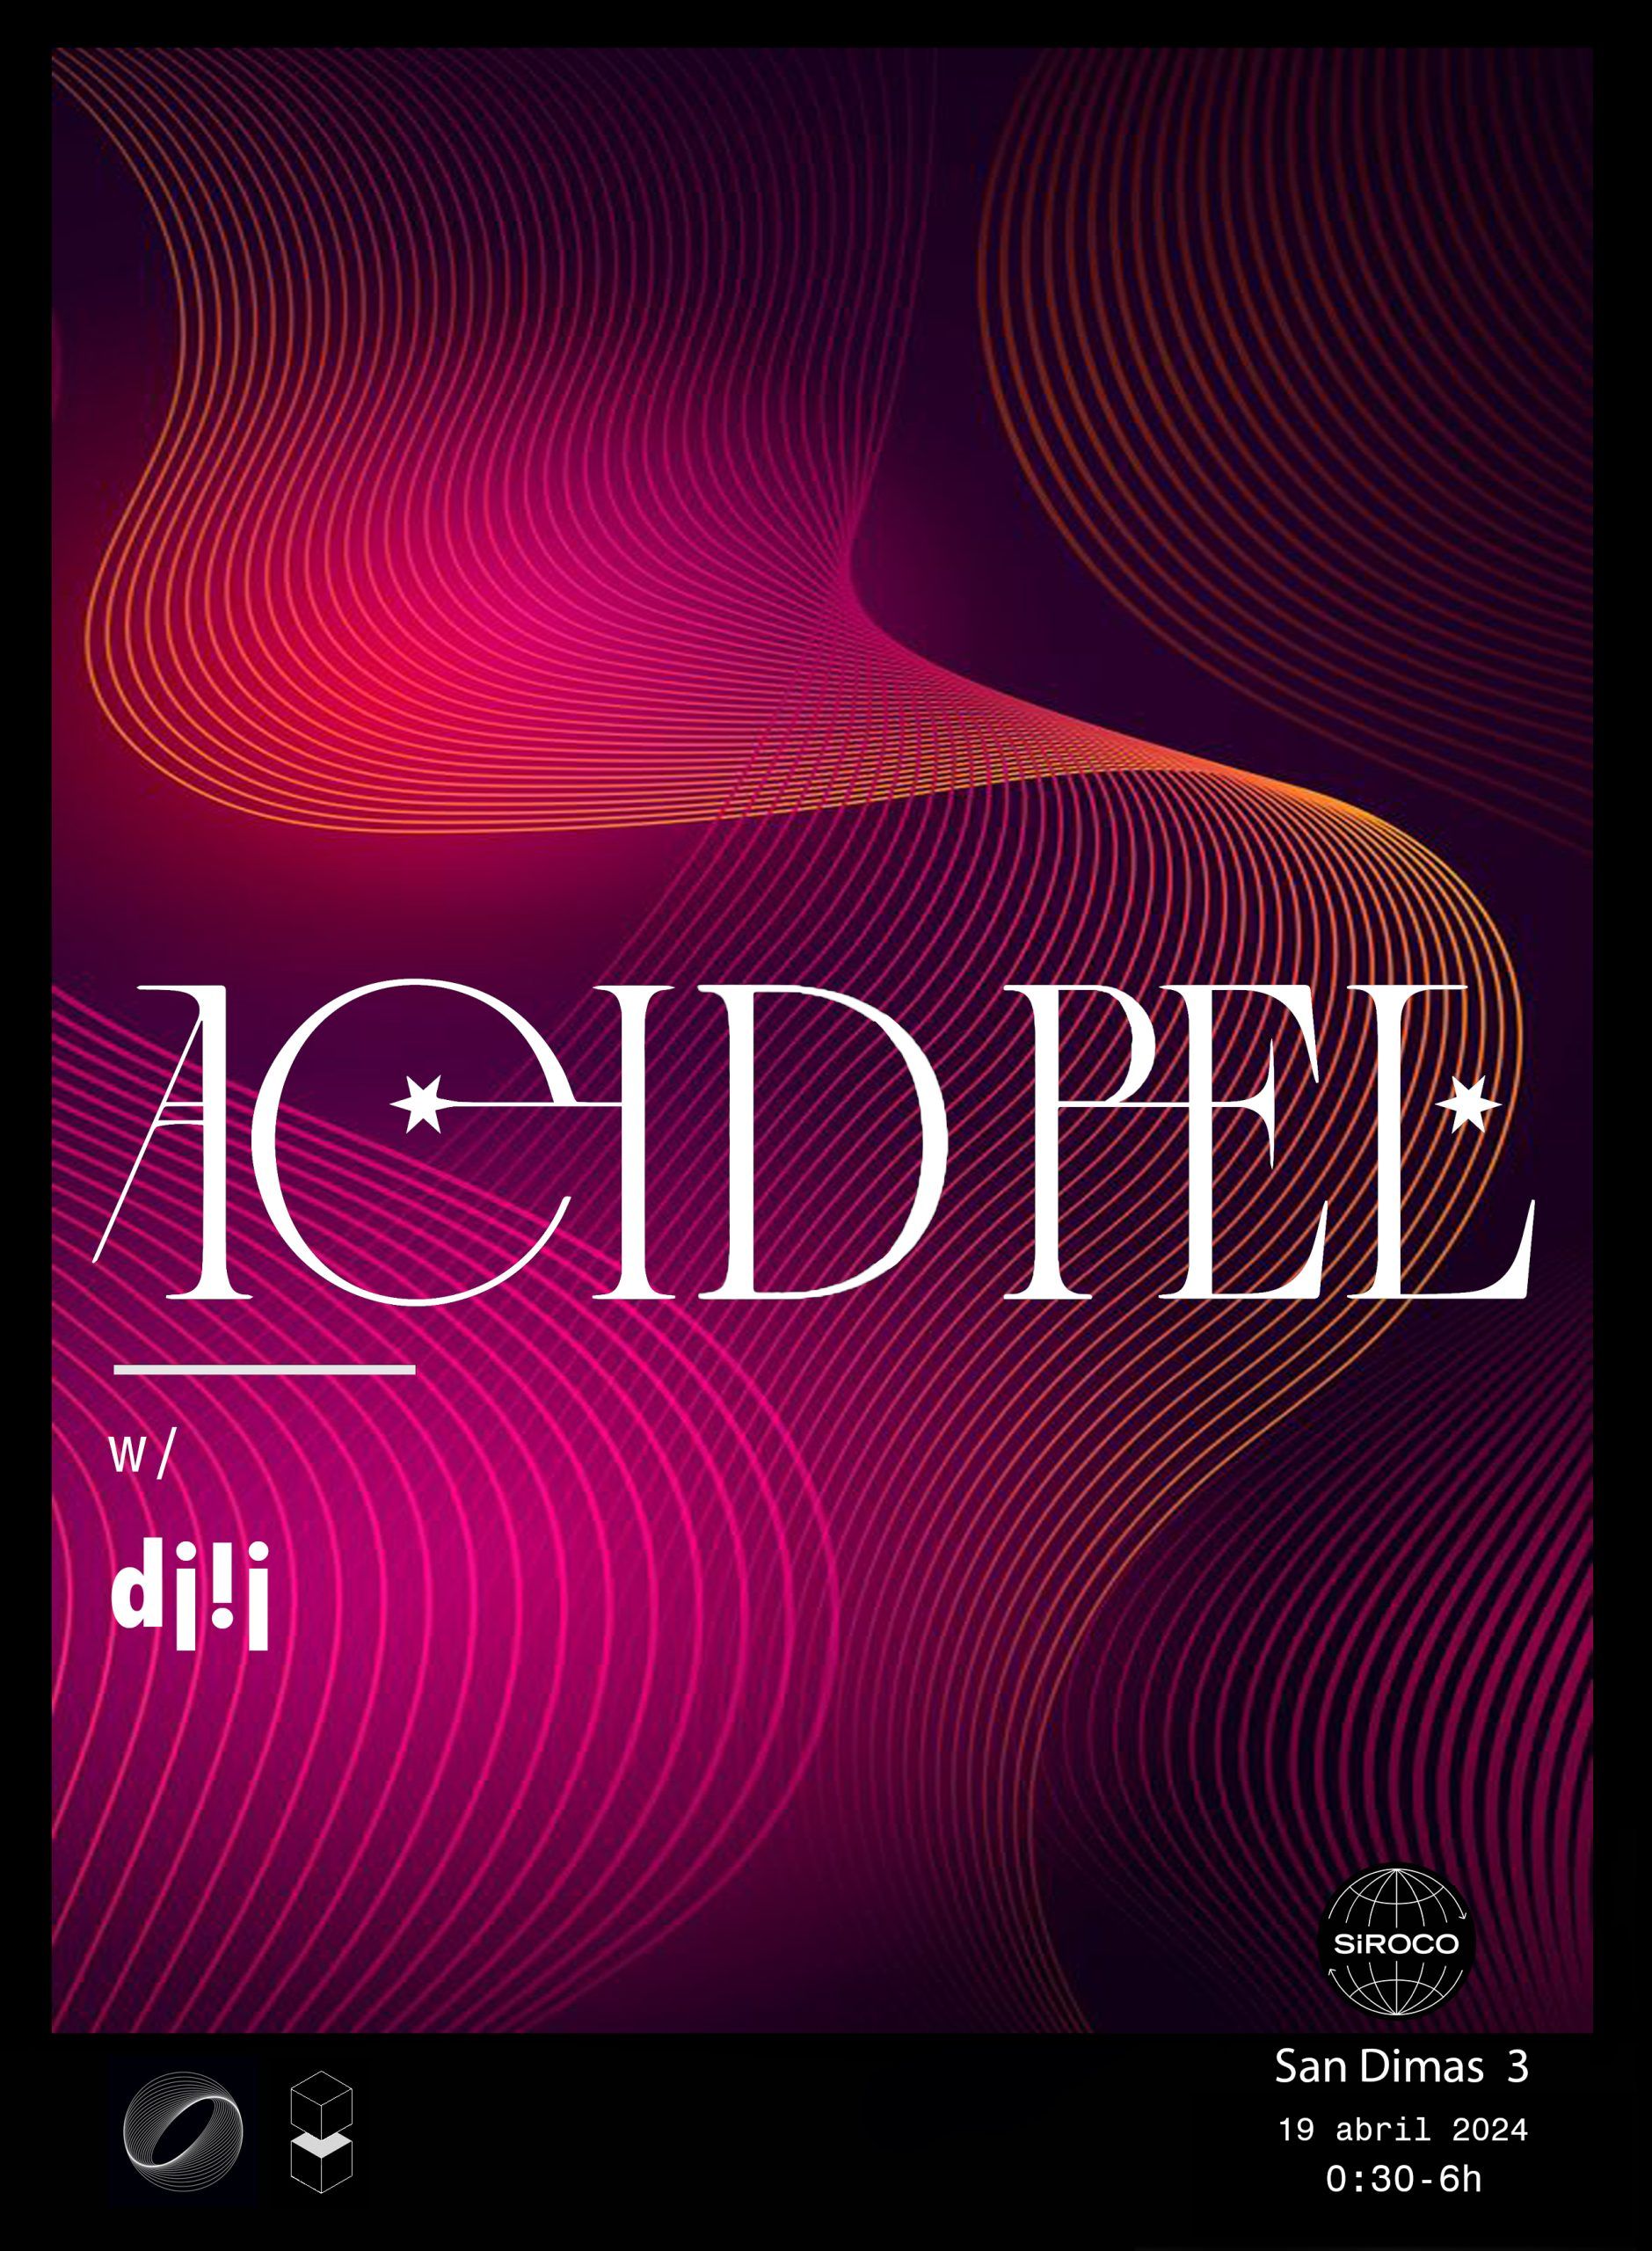 AcidPel w/ Di!i